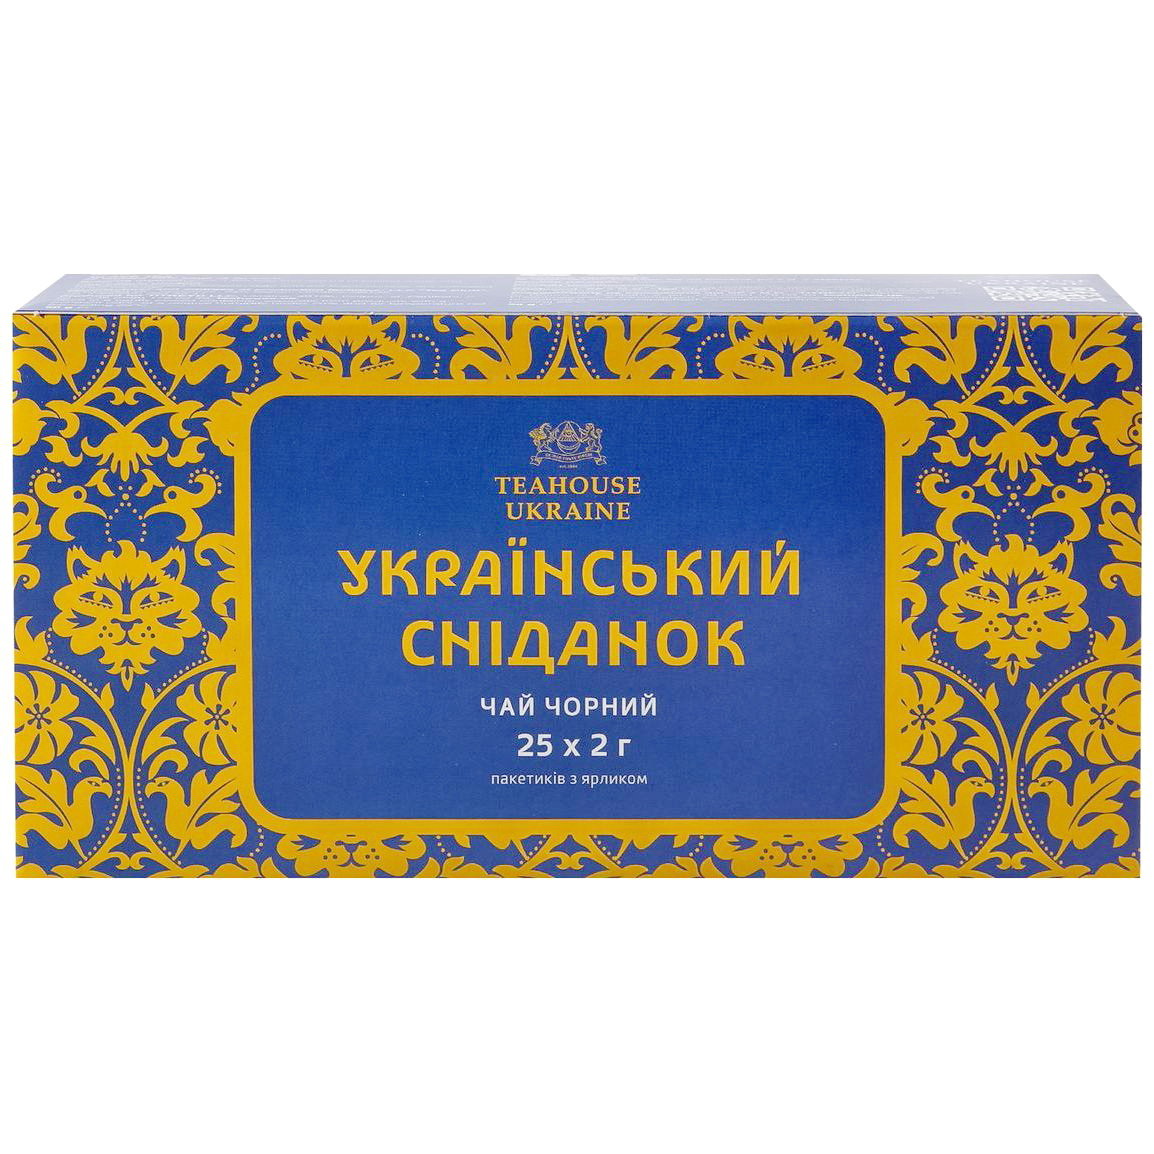 Чай чорний Teahouse Ukraine Український сніданок, 25 пакетиків (924098) - фото 1